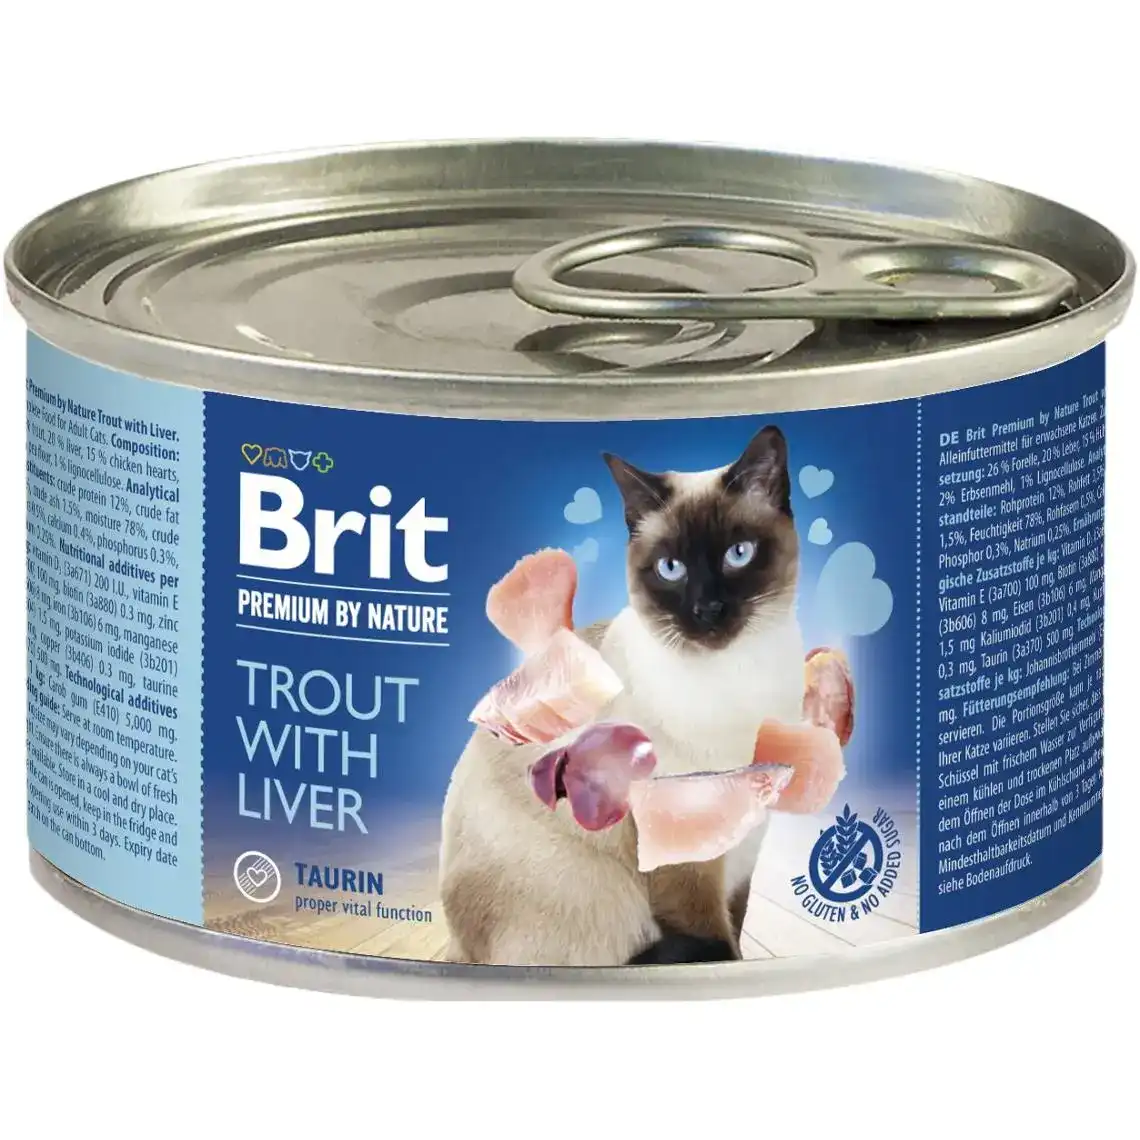 Вологий корм для кішок Brit Premium by Nature Trout with Liver з фореллю і печінкою 200 г